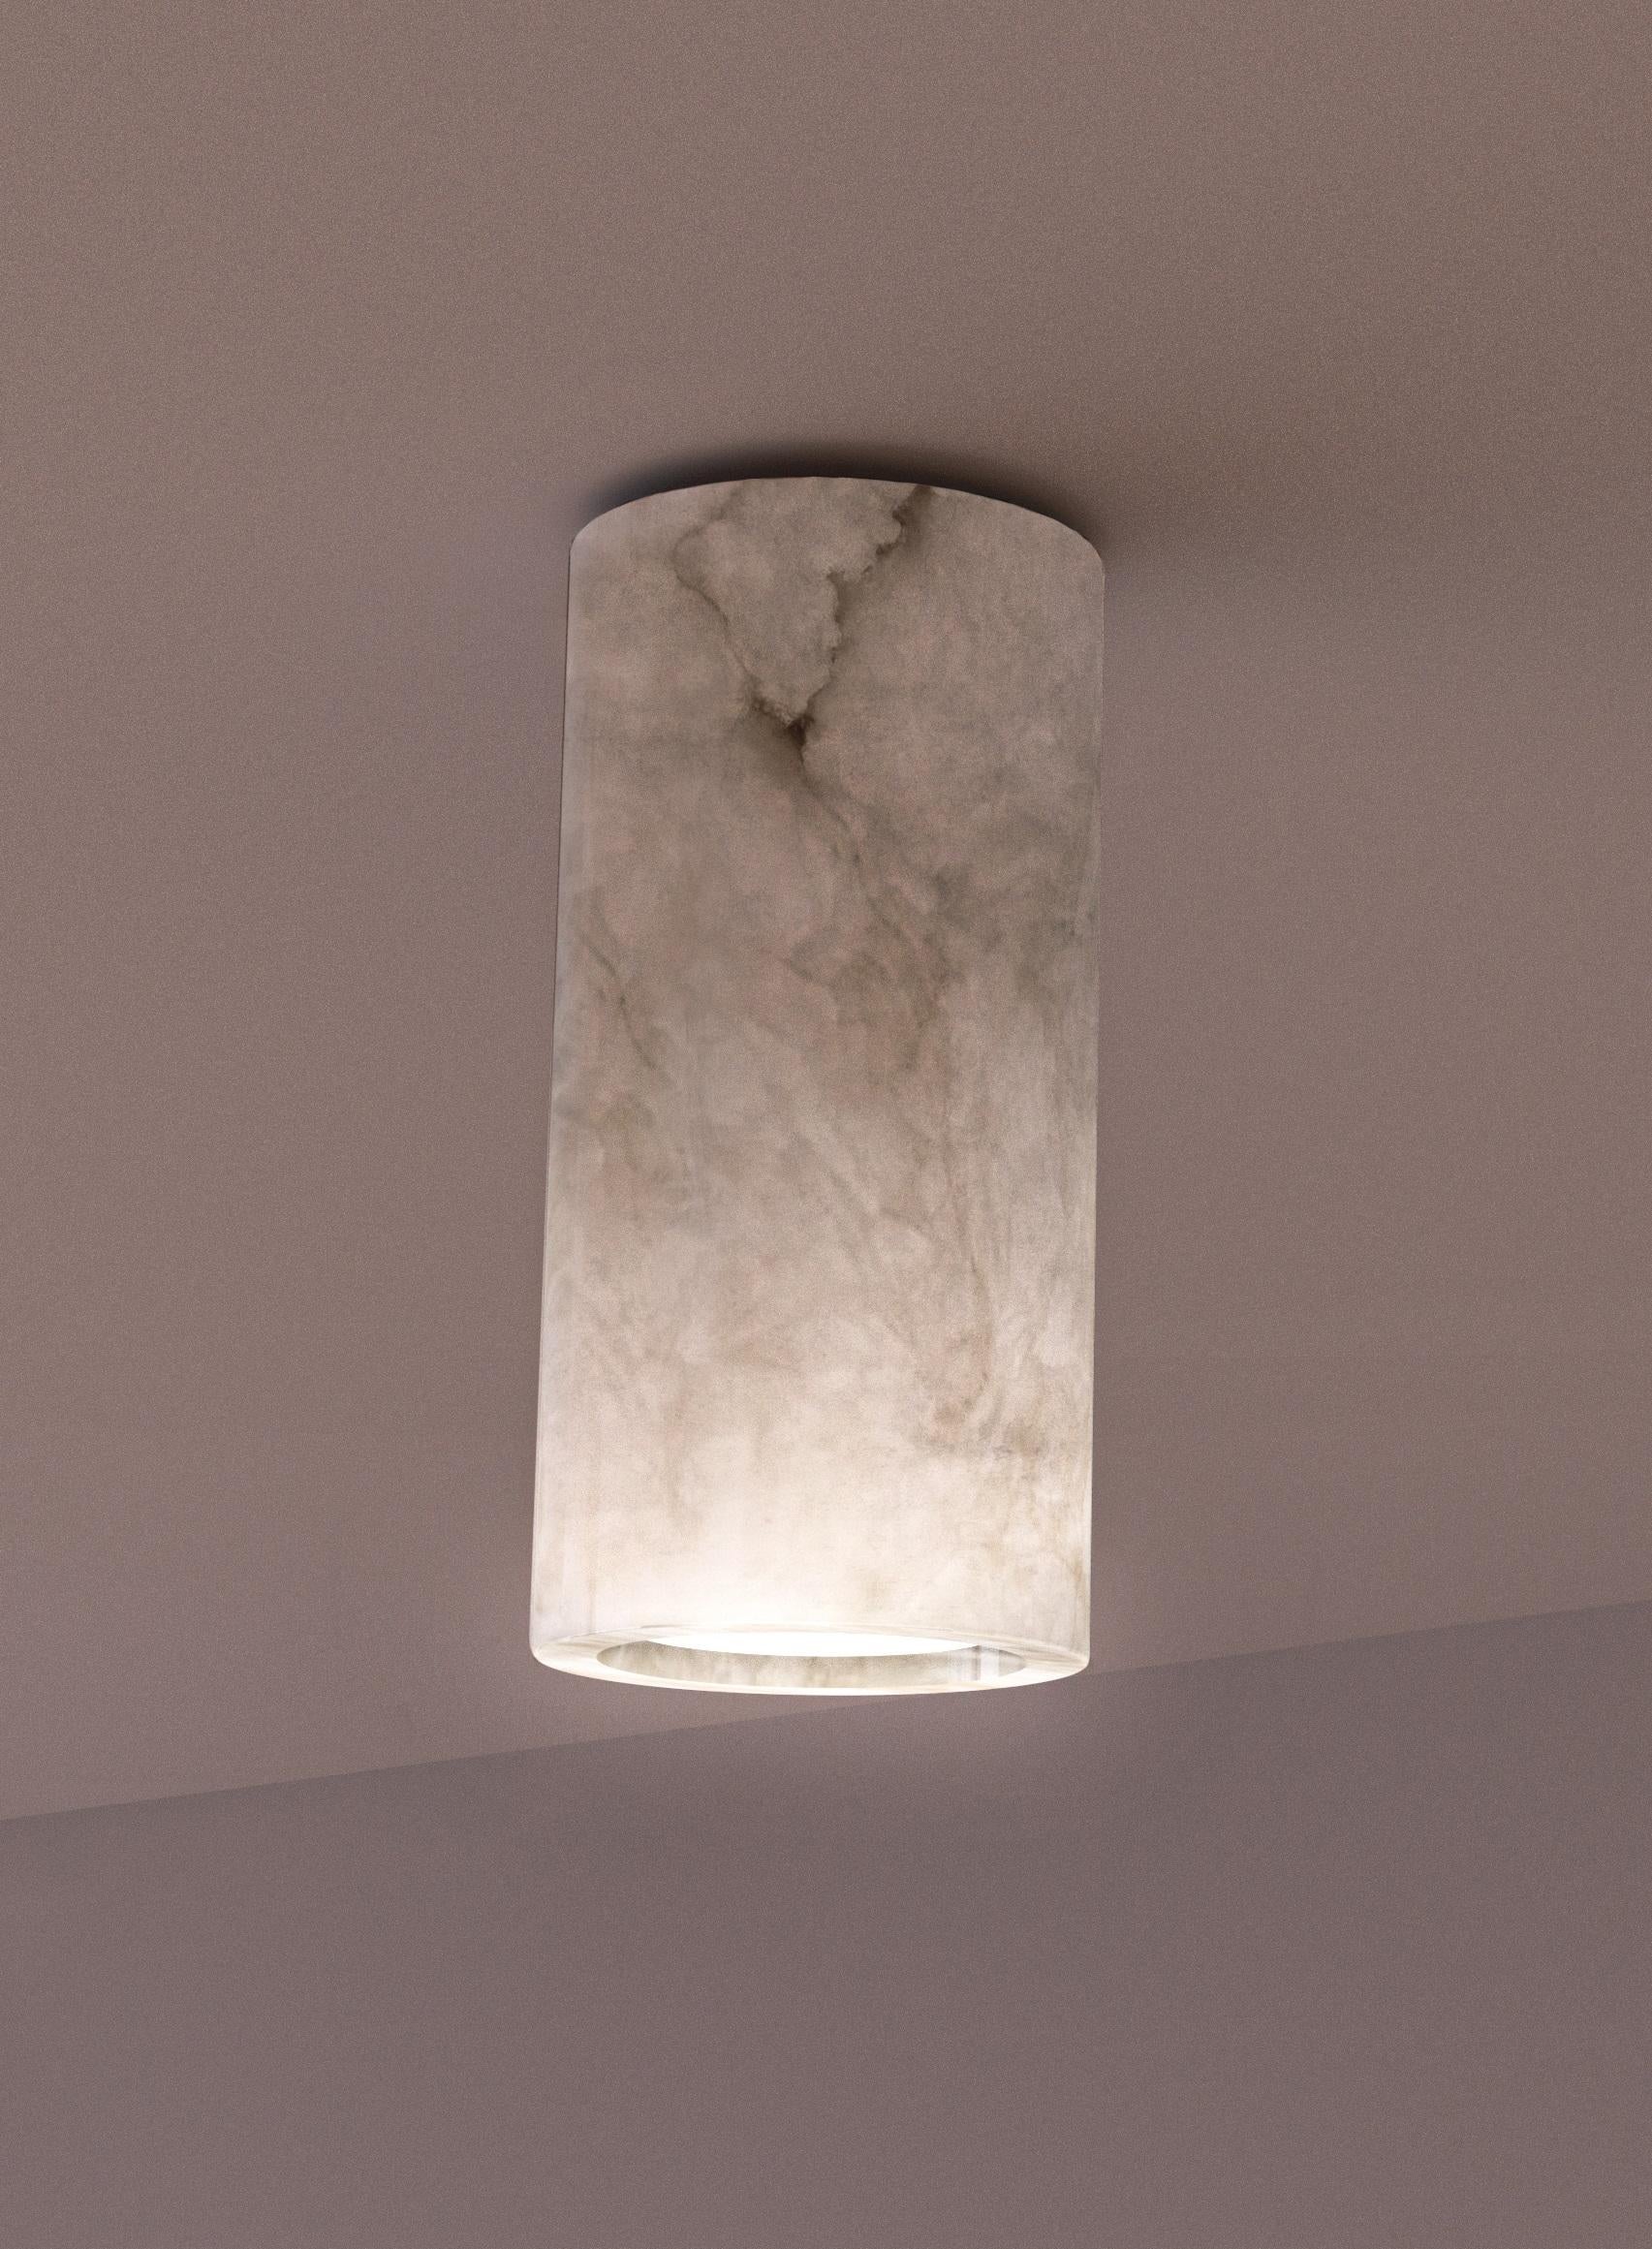 Henka Weißes Alabaster-Leuchte aus Alabaster von Alabastro Italiano
Abmessungen: Ø 7,2 x H 15 cm.
MATERIALIEN: Weißer Alabaster.

Erhältlich in weißem Alabaster und Iroko-Holz. Bitte kontaktieren Sie uns.

Alle unsere Lampen können je nach Land